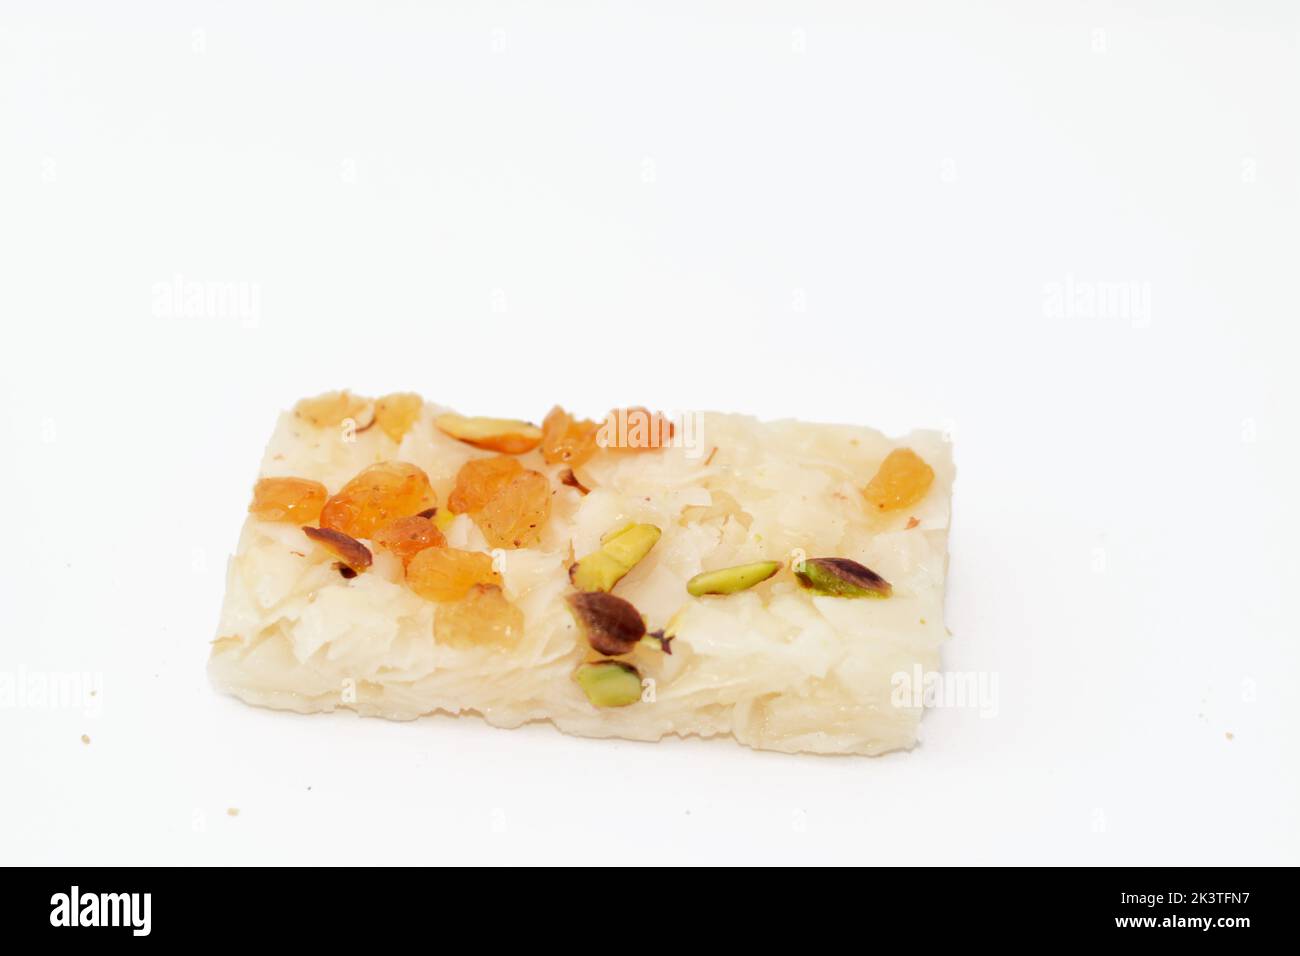 Cocco con uva passa e pistacchio, una caramella orientale fatta come celebrazione del compleanno di Maometto del profeta in Egitto, arabo e paese islamico Foto Stock